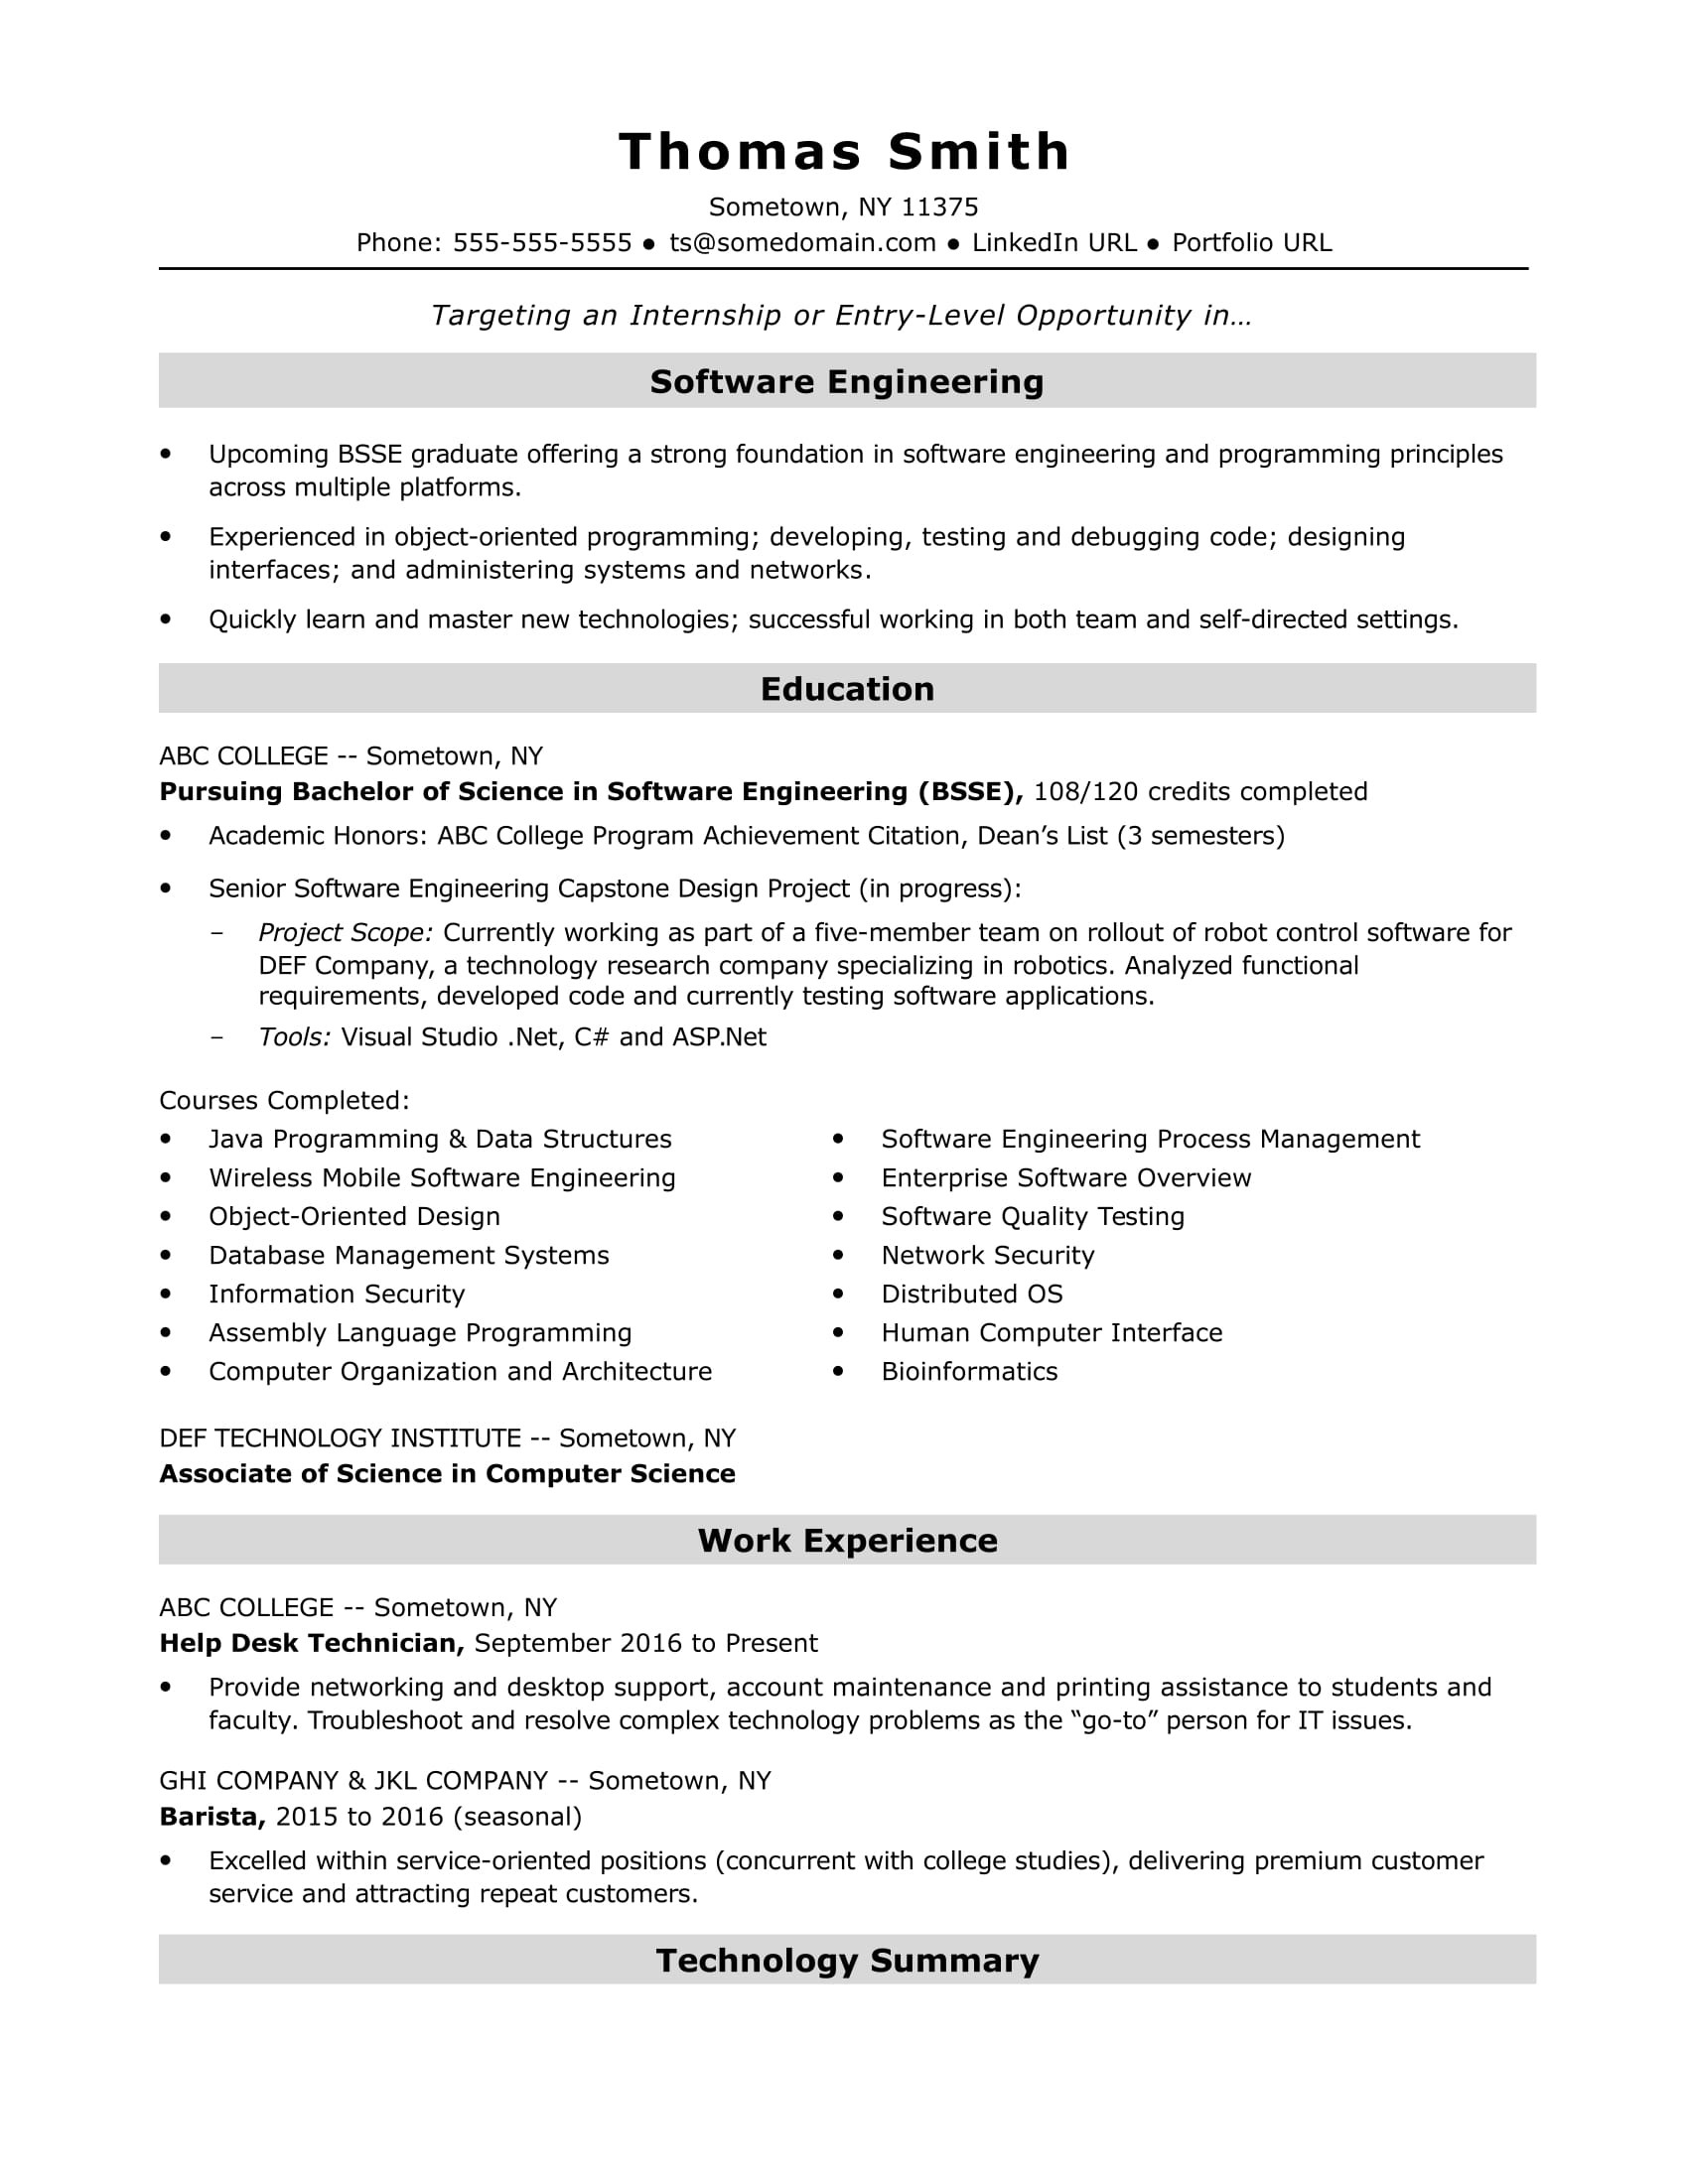 Resume Sample for associate Development Job Entry-level software Engineer Resume Sample Monster.com